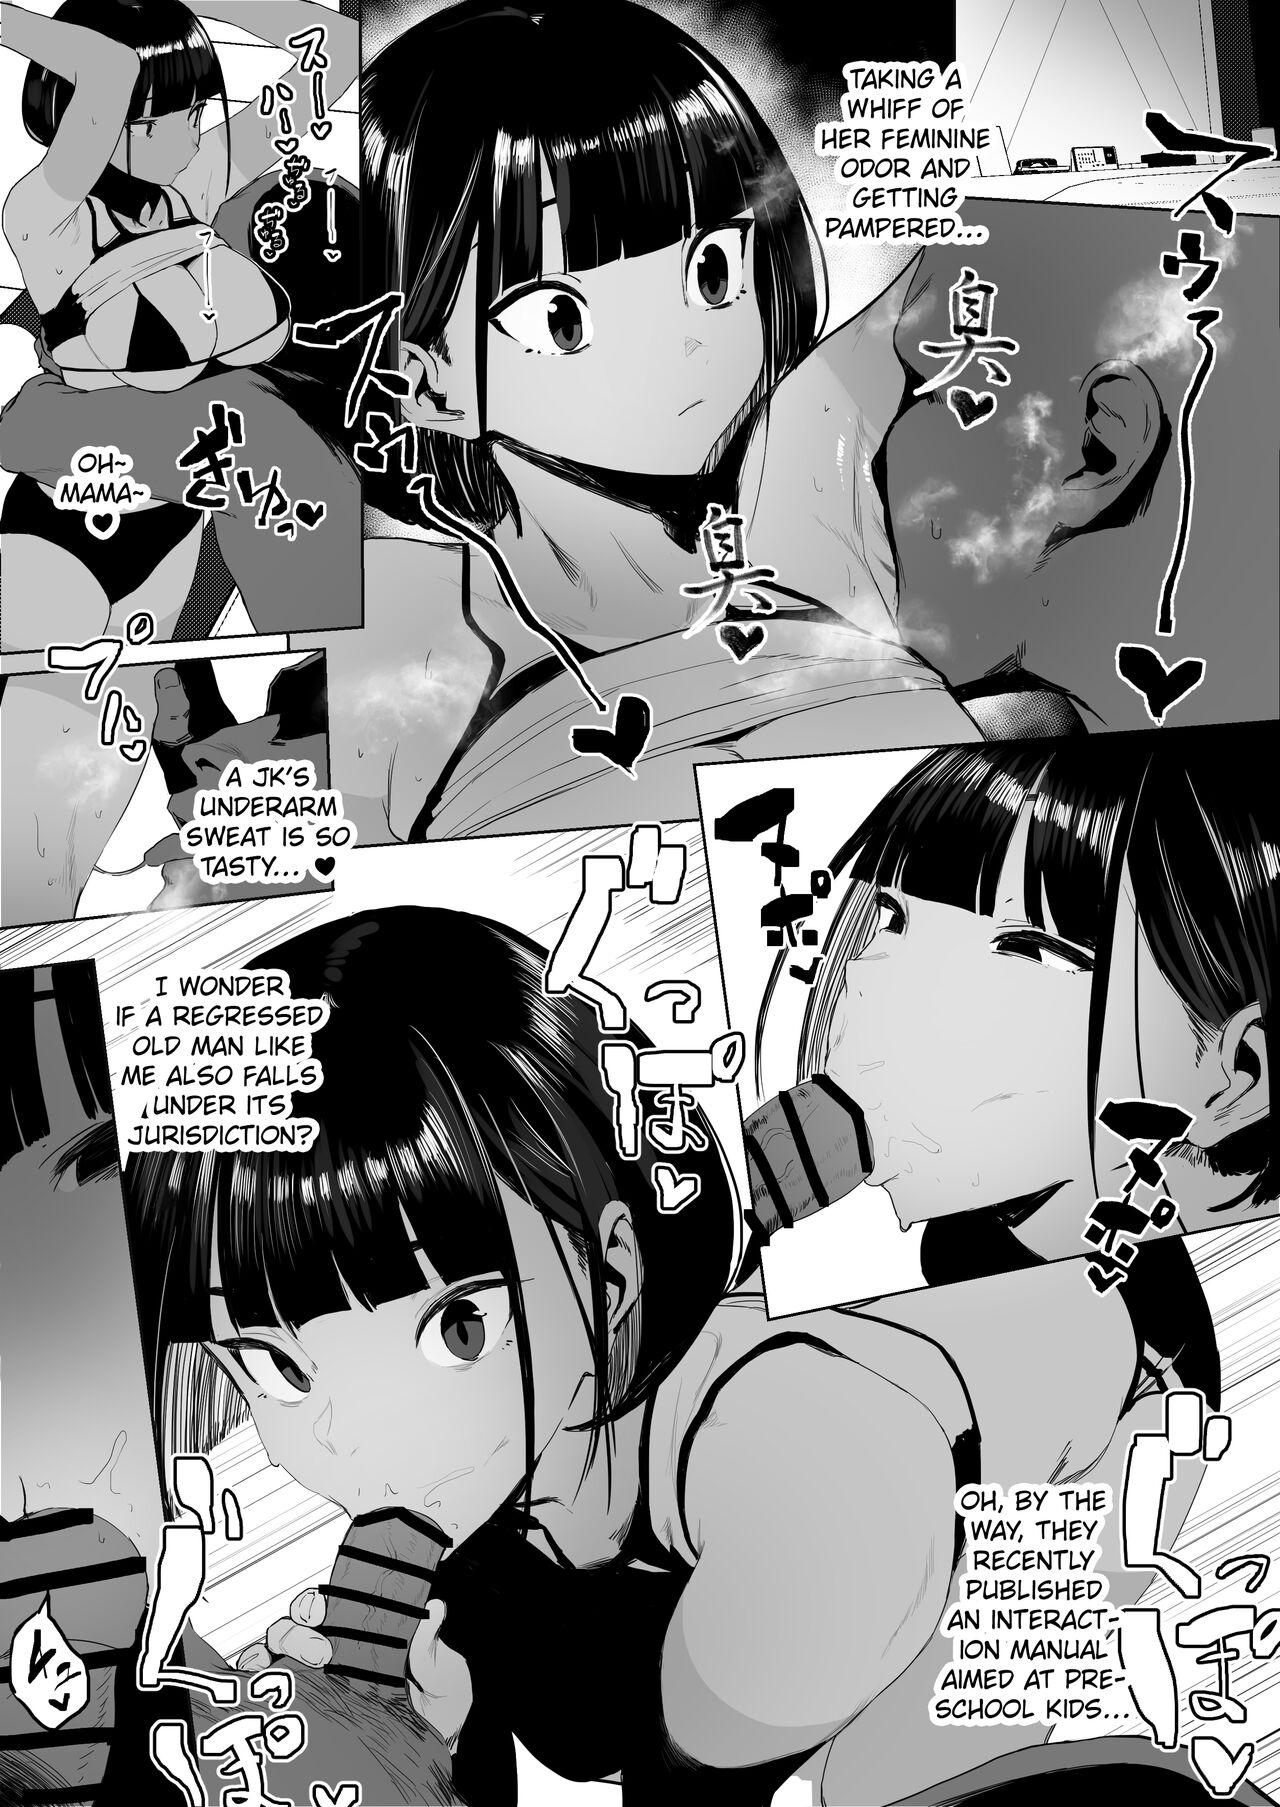 Student Rikujobu-chan - Original 19yo - Page 4